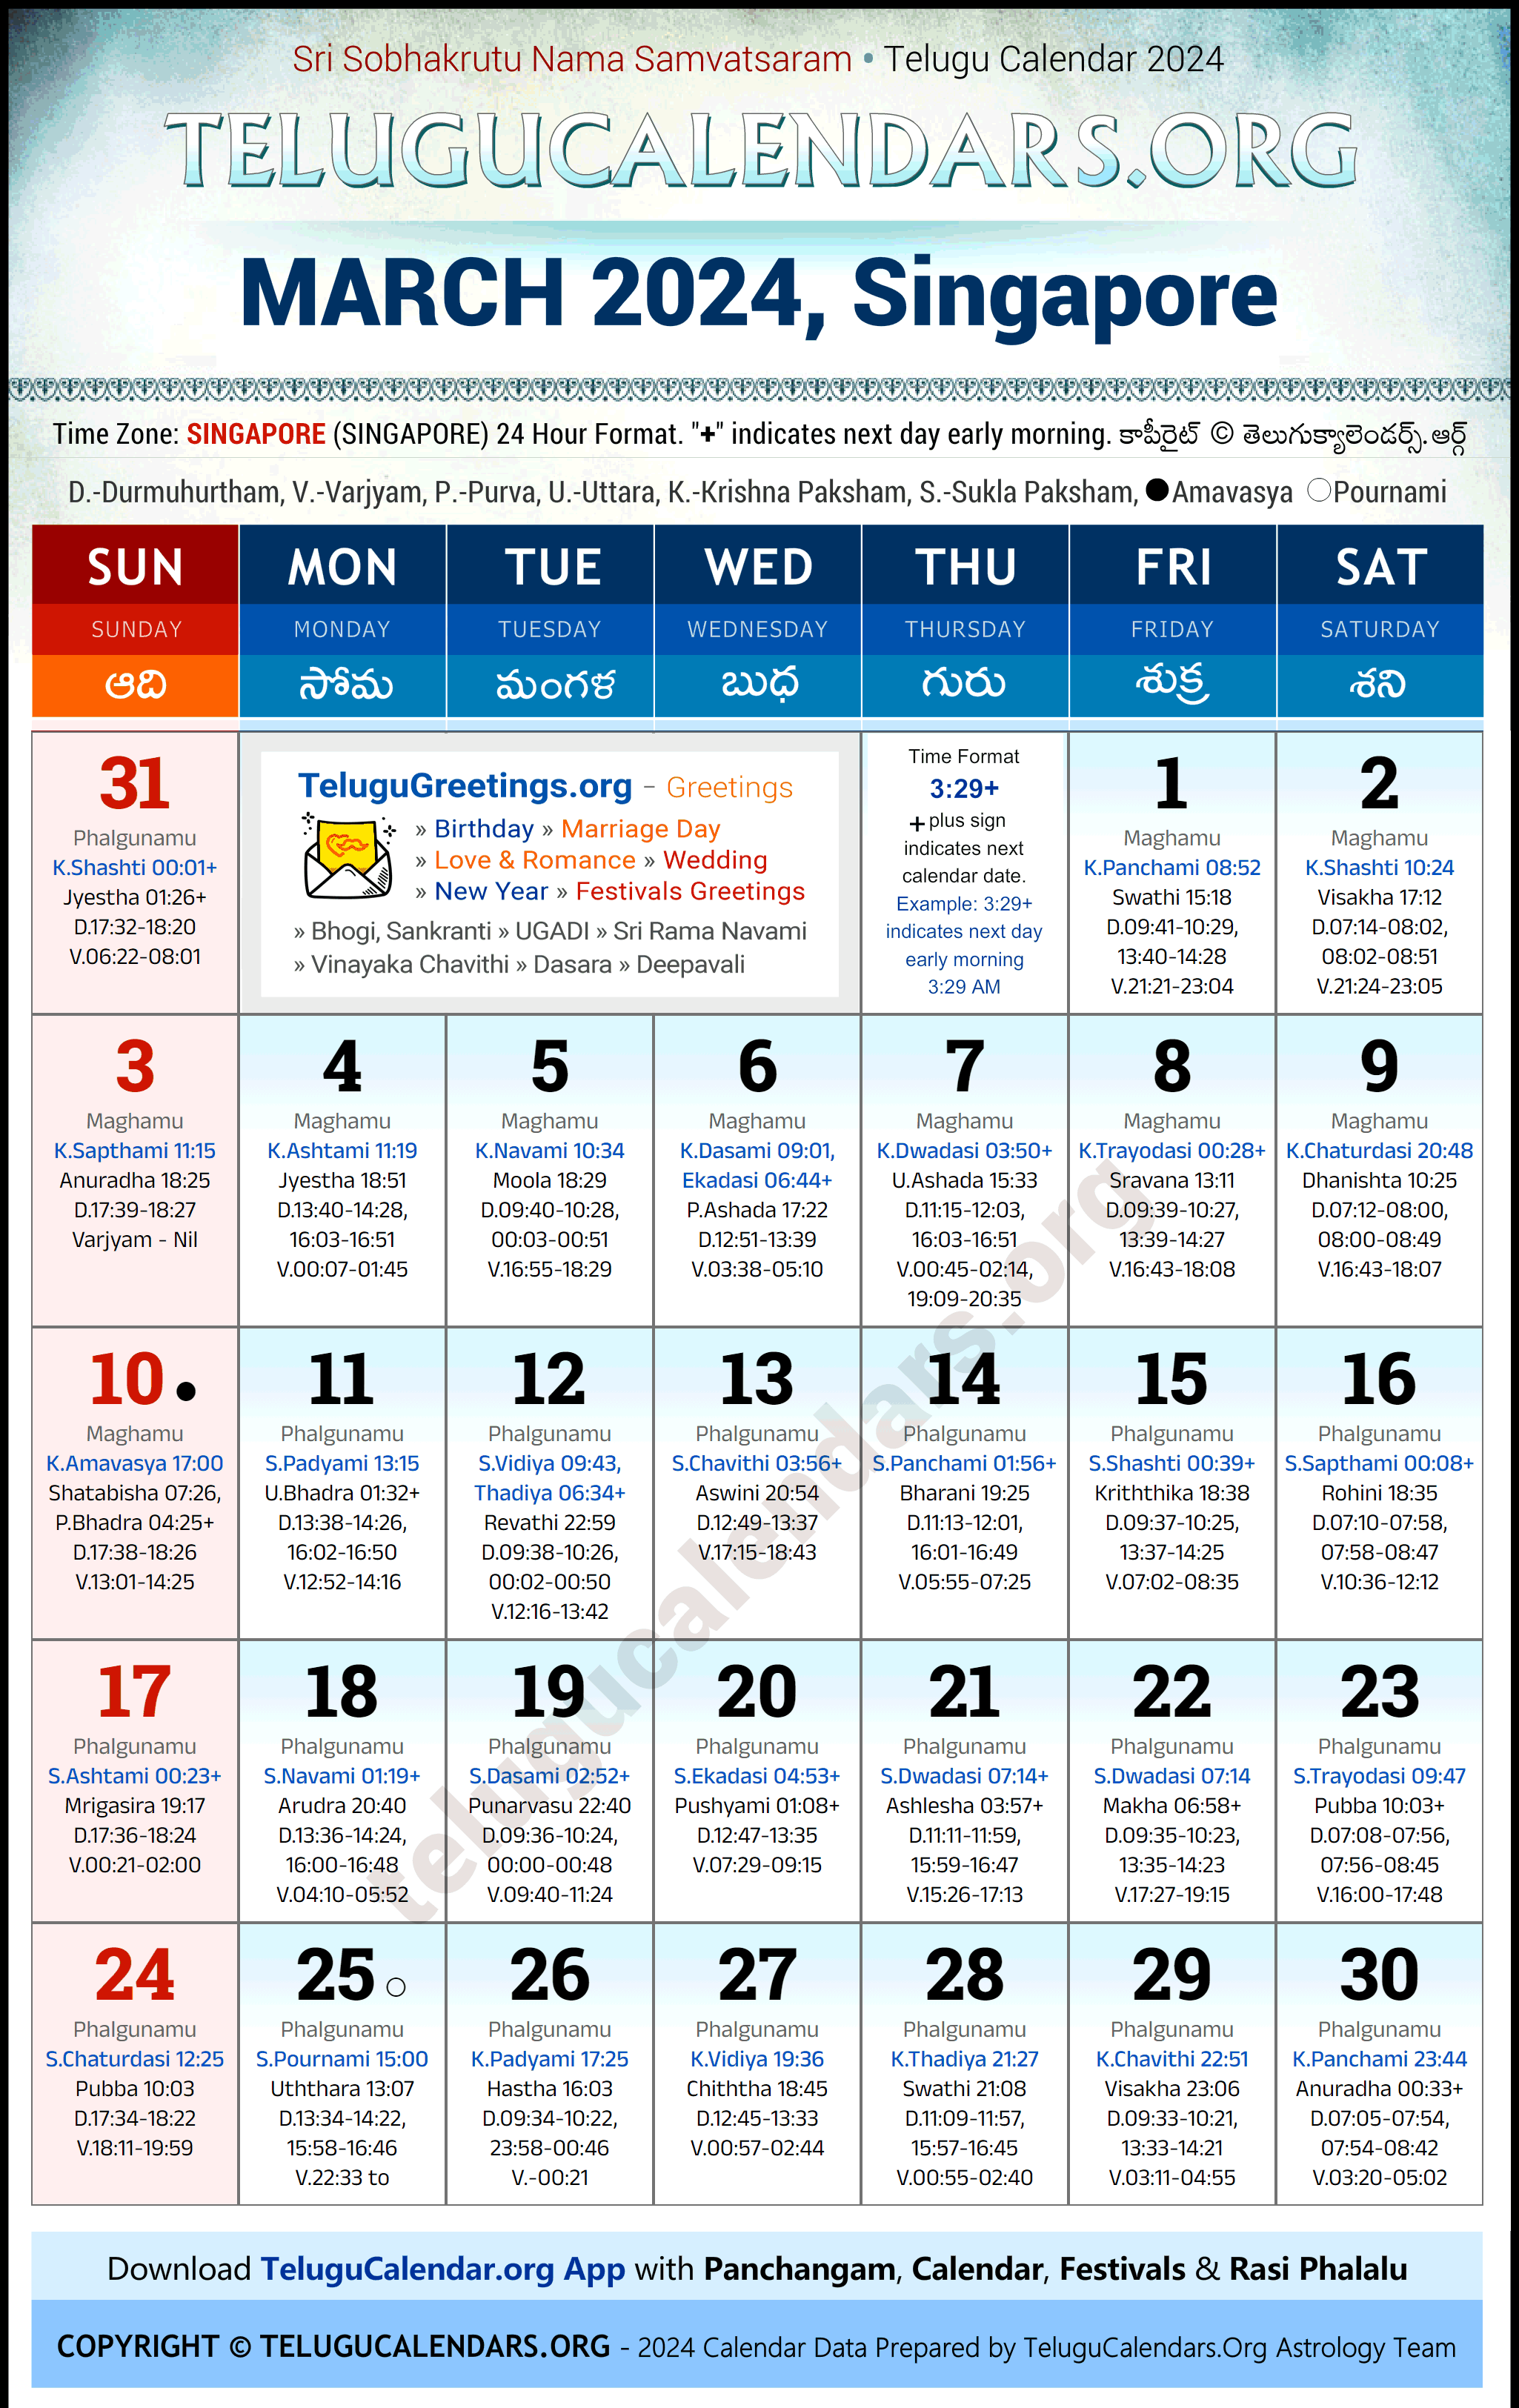 Telugu Calendar 2024 March Festivals for Singapore